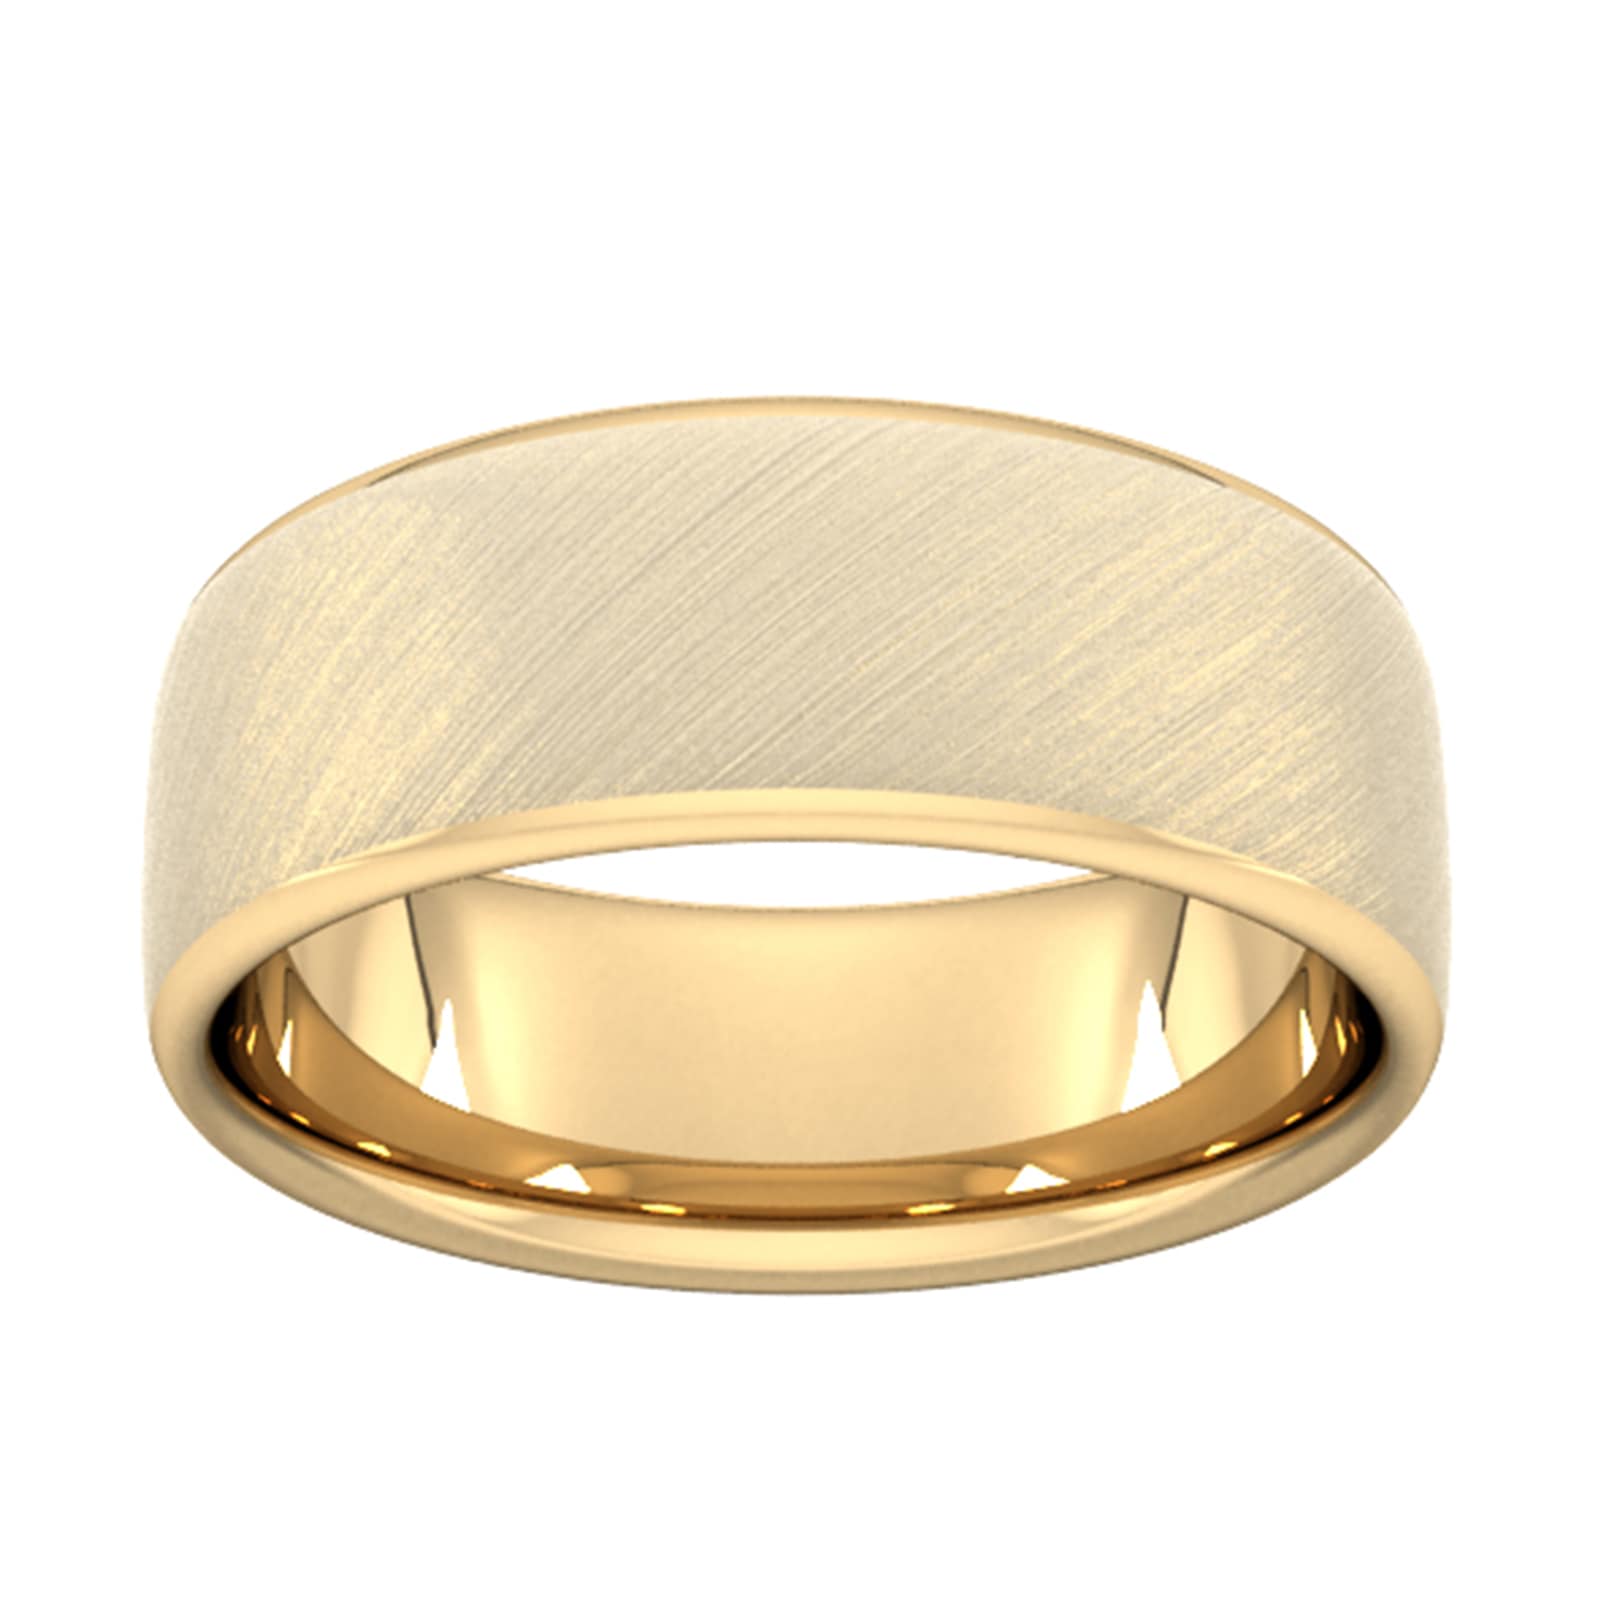 8mm Slight Court Heavy Diagonal Matt Finish Wedding Ring In 9 Carat Yellow Gold - Ring Size V